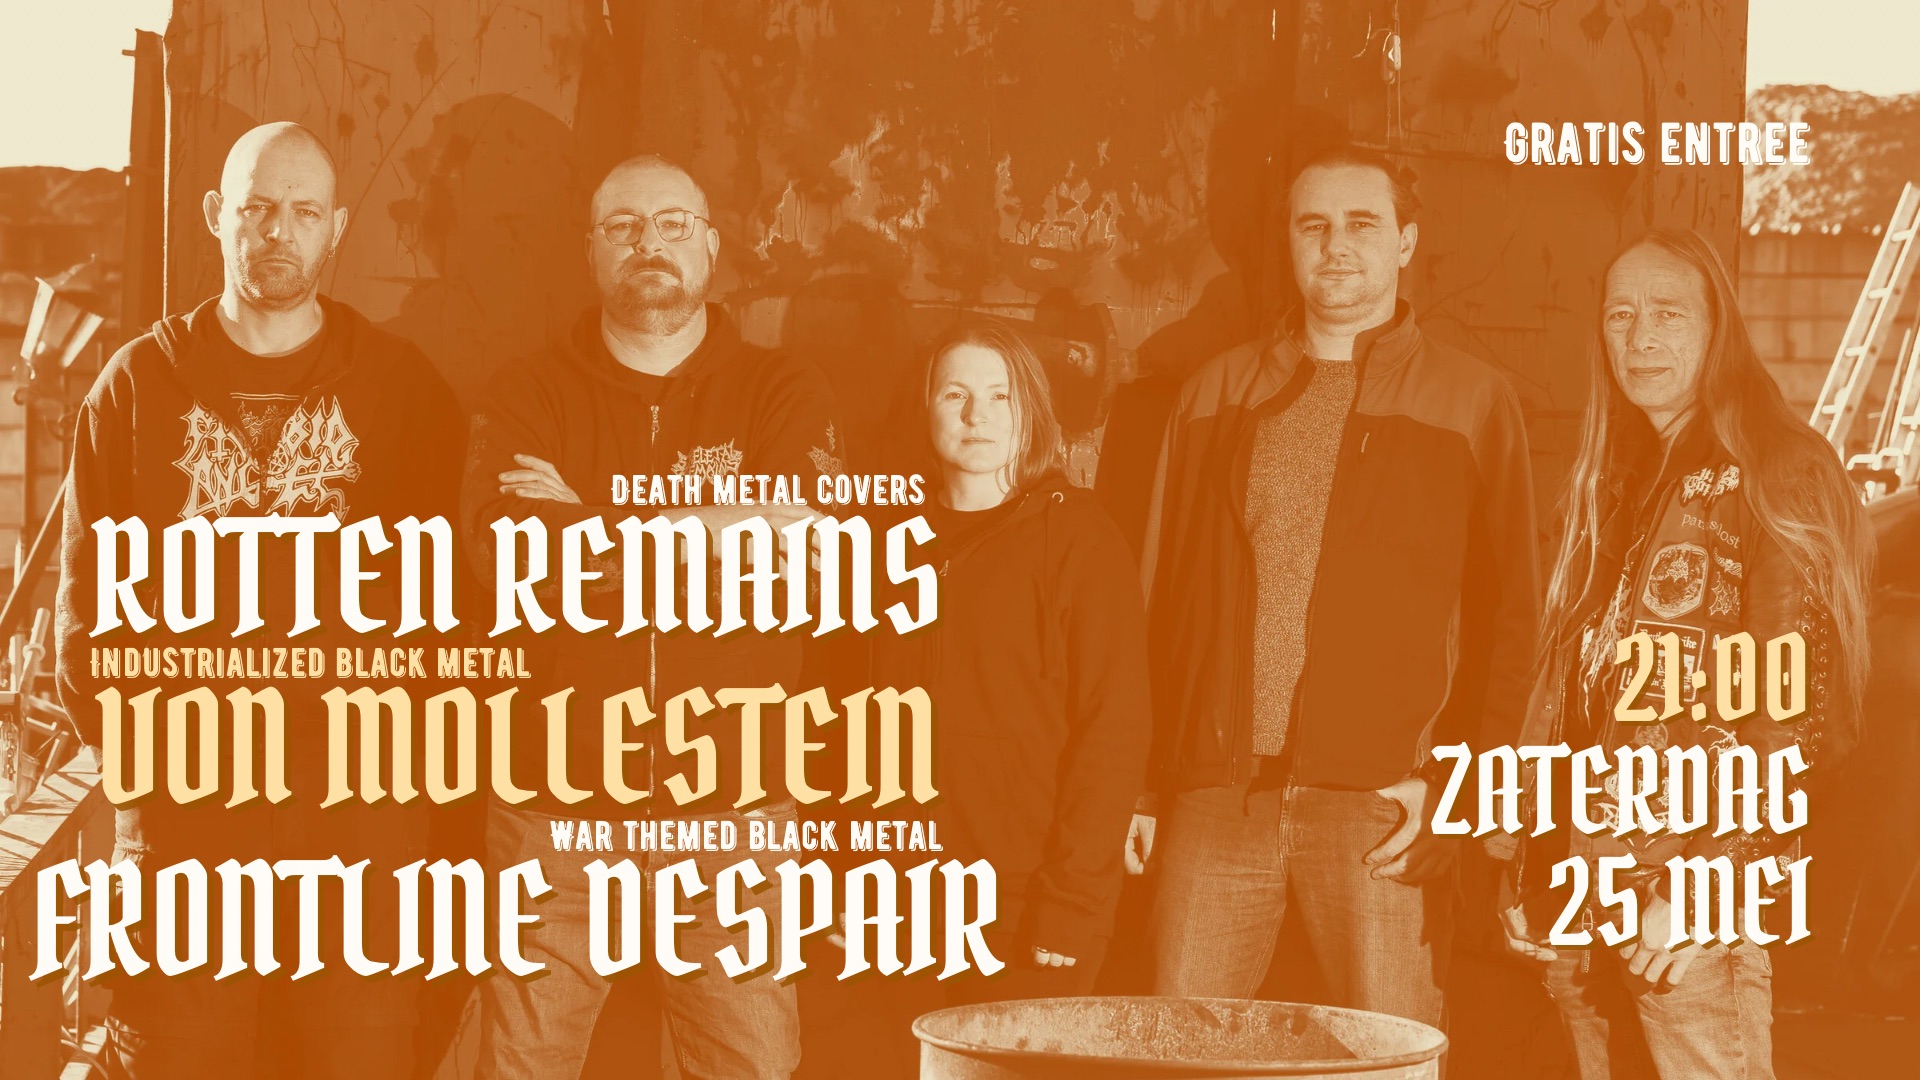 Rotten Remains // Von Mollestein // Frontline Despair header